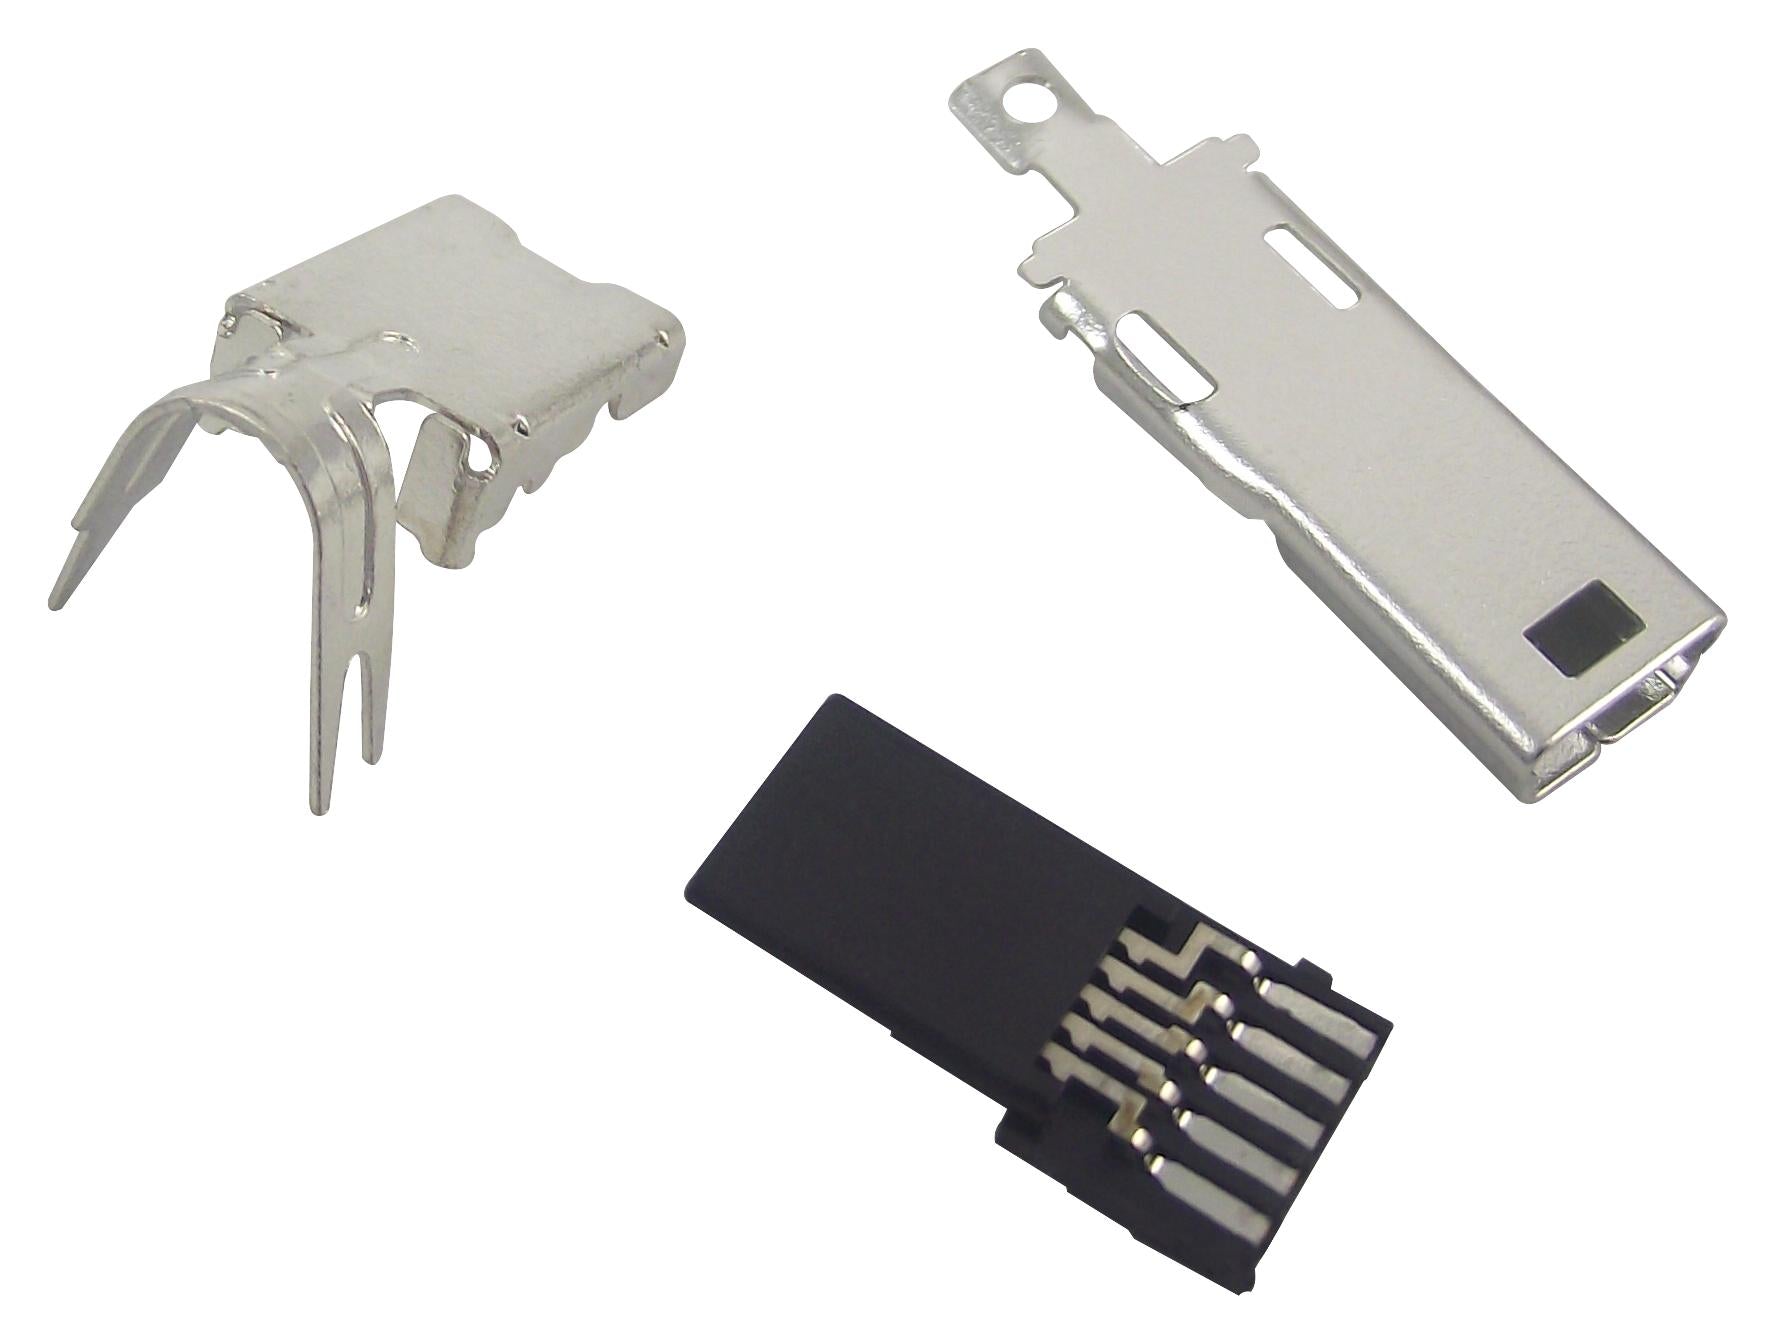 UX40A-MB-5P MINI USB, 2.0 TYPE B, PLUG, CABLE HIROSE(HRS)